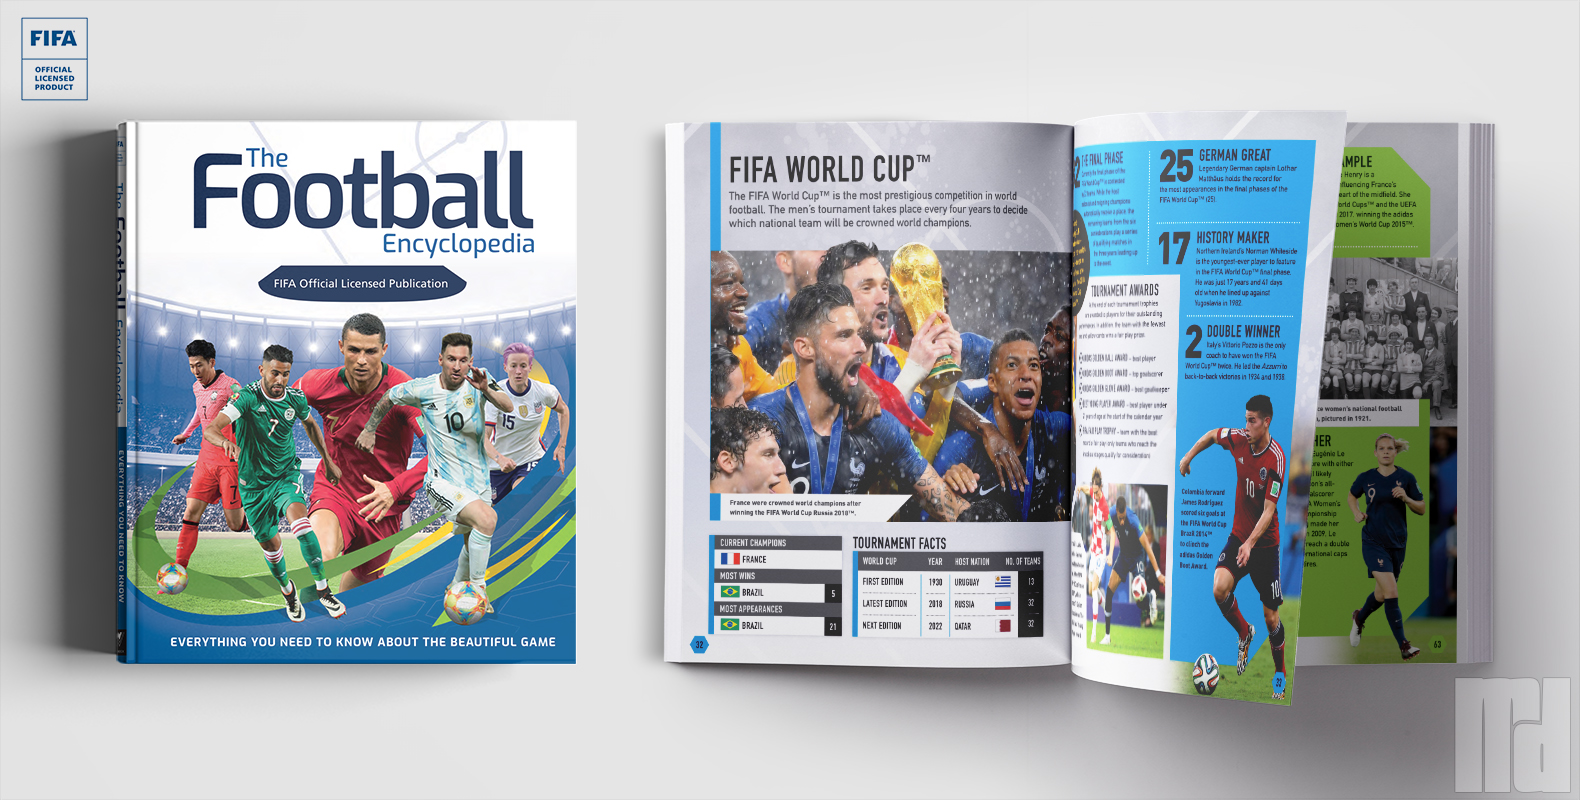 The Football
Encyclopedia (FIFA)